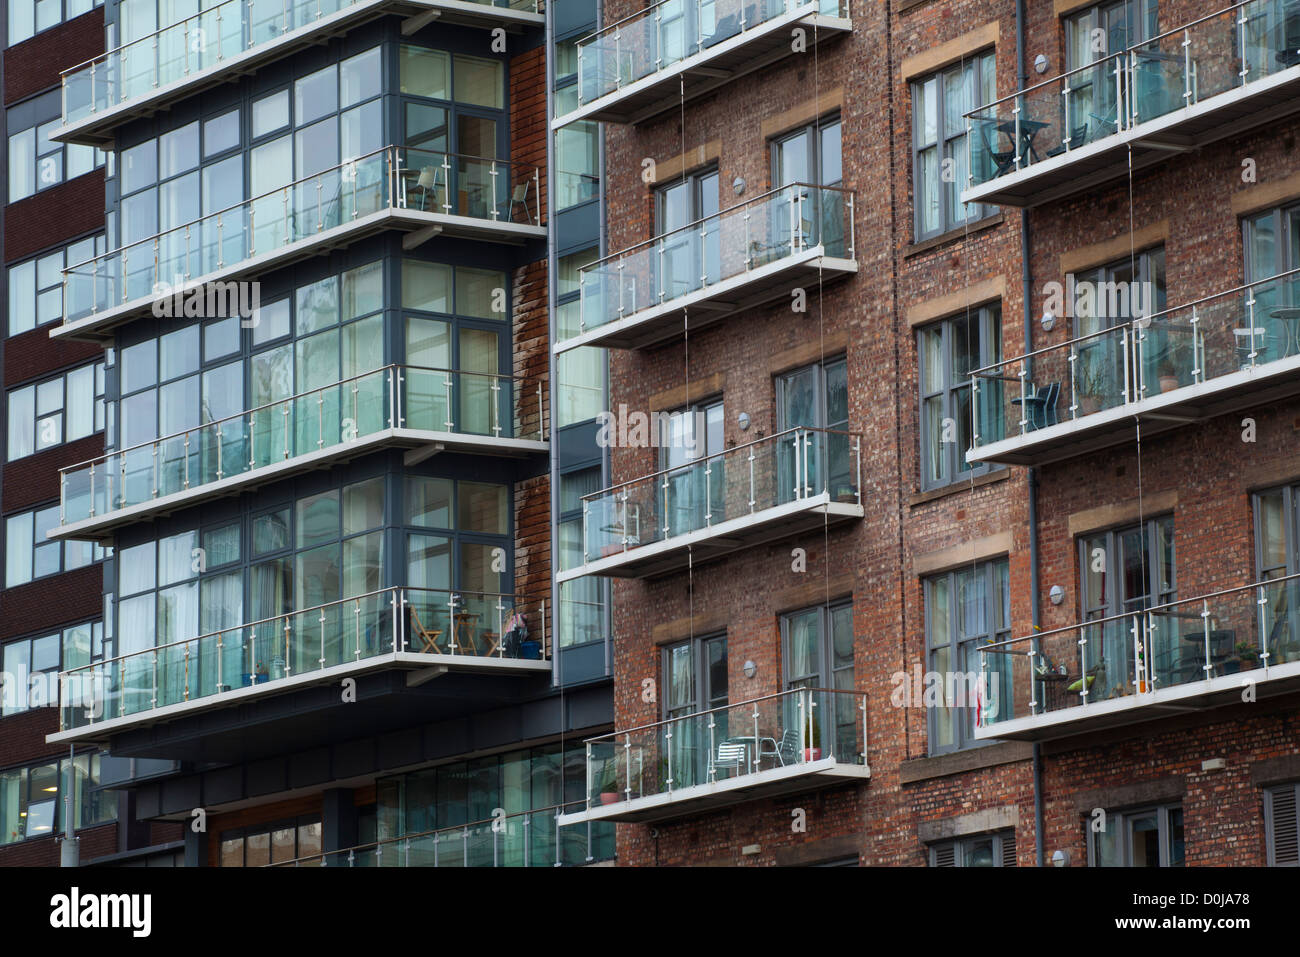 Detalle shot de modernos apartamentos formado por victoriano redevolping almacenes situados a orillas del río Irwell, cerca del tr Foto de stock